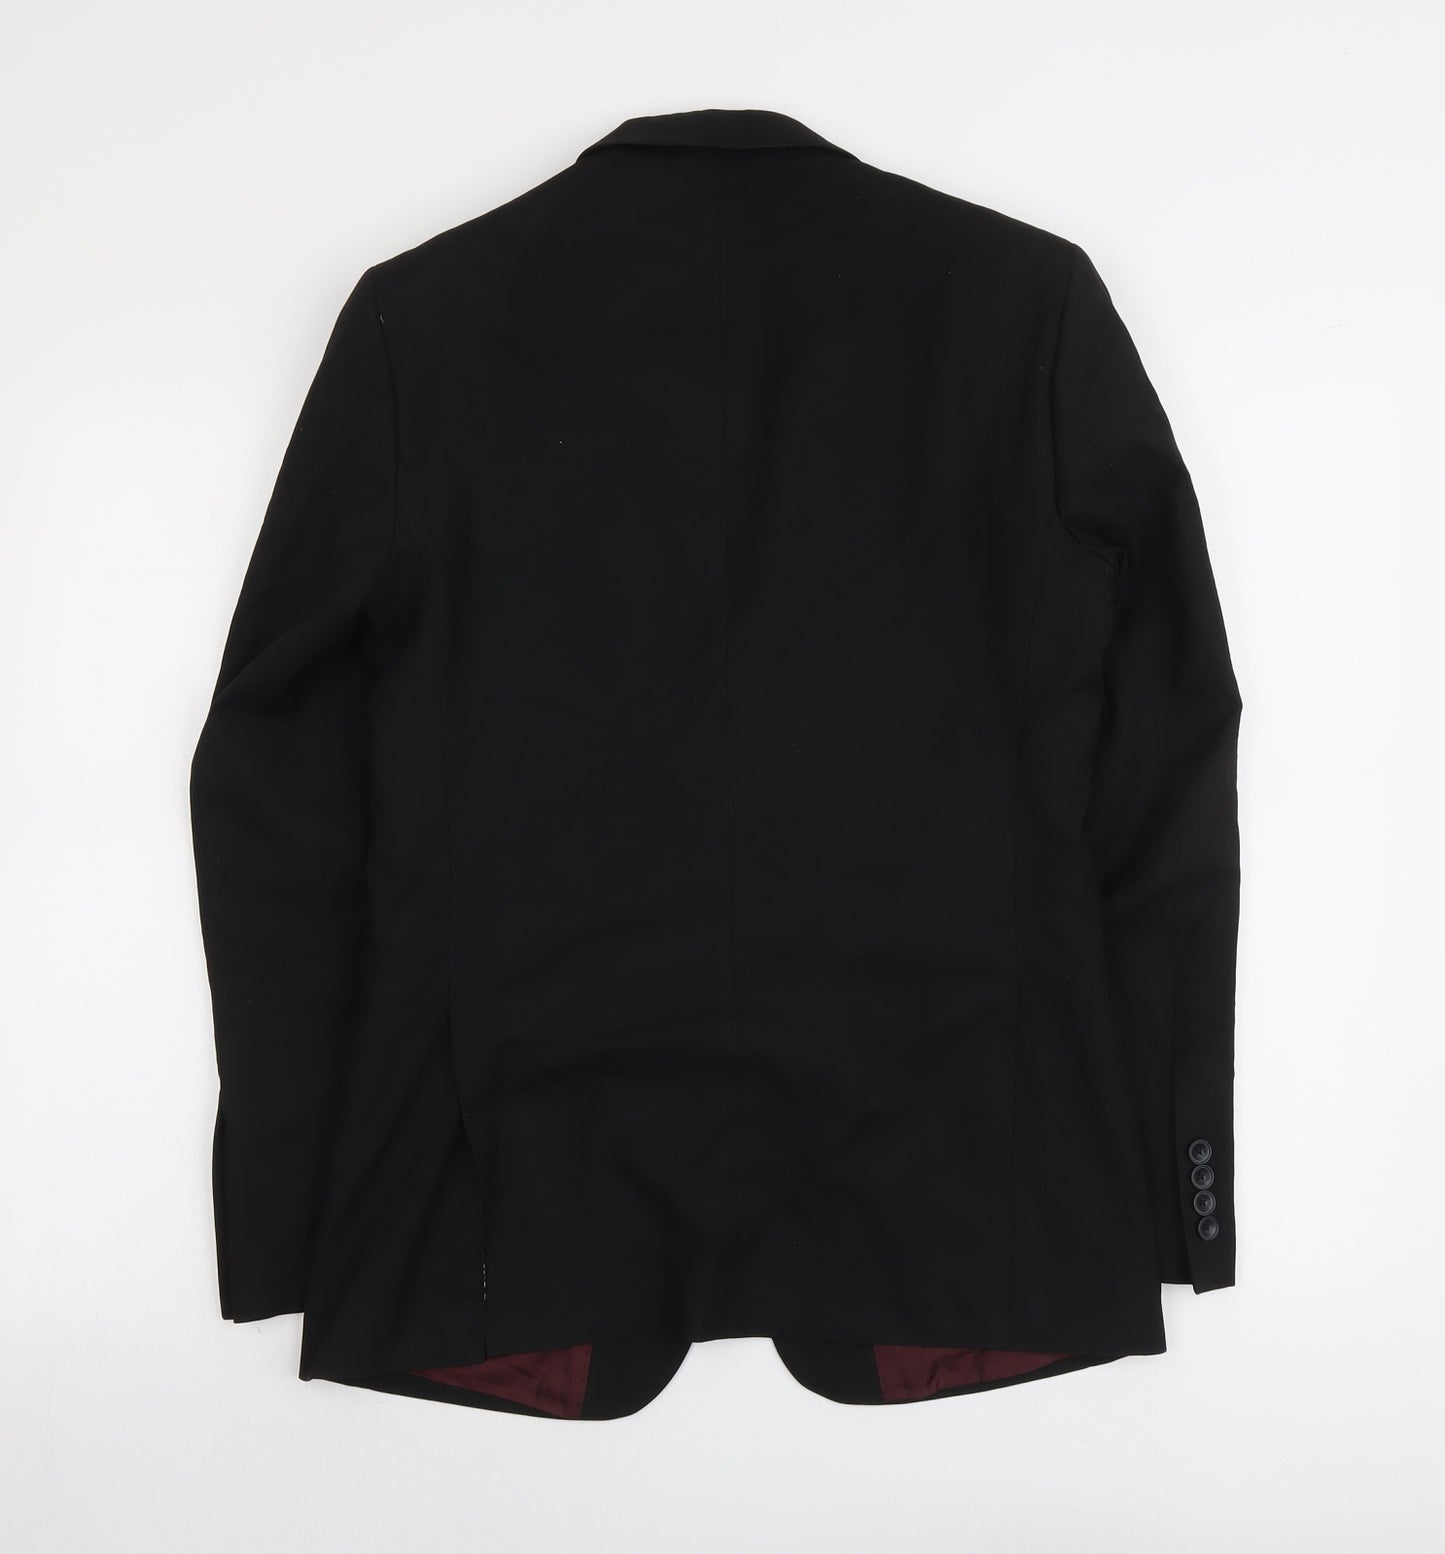 Marks and Spencer Mens Black Polyester Jacket Suit Jacket Size S Regular